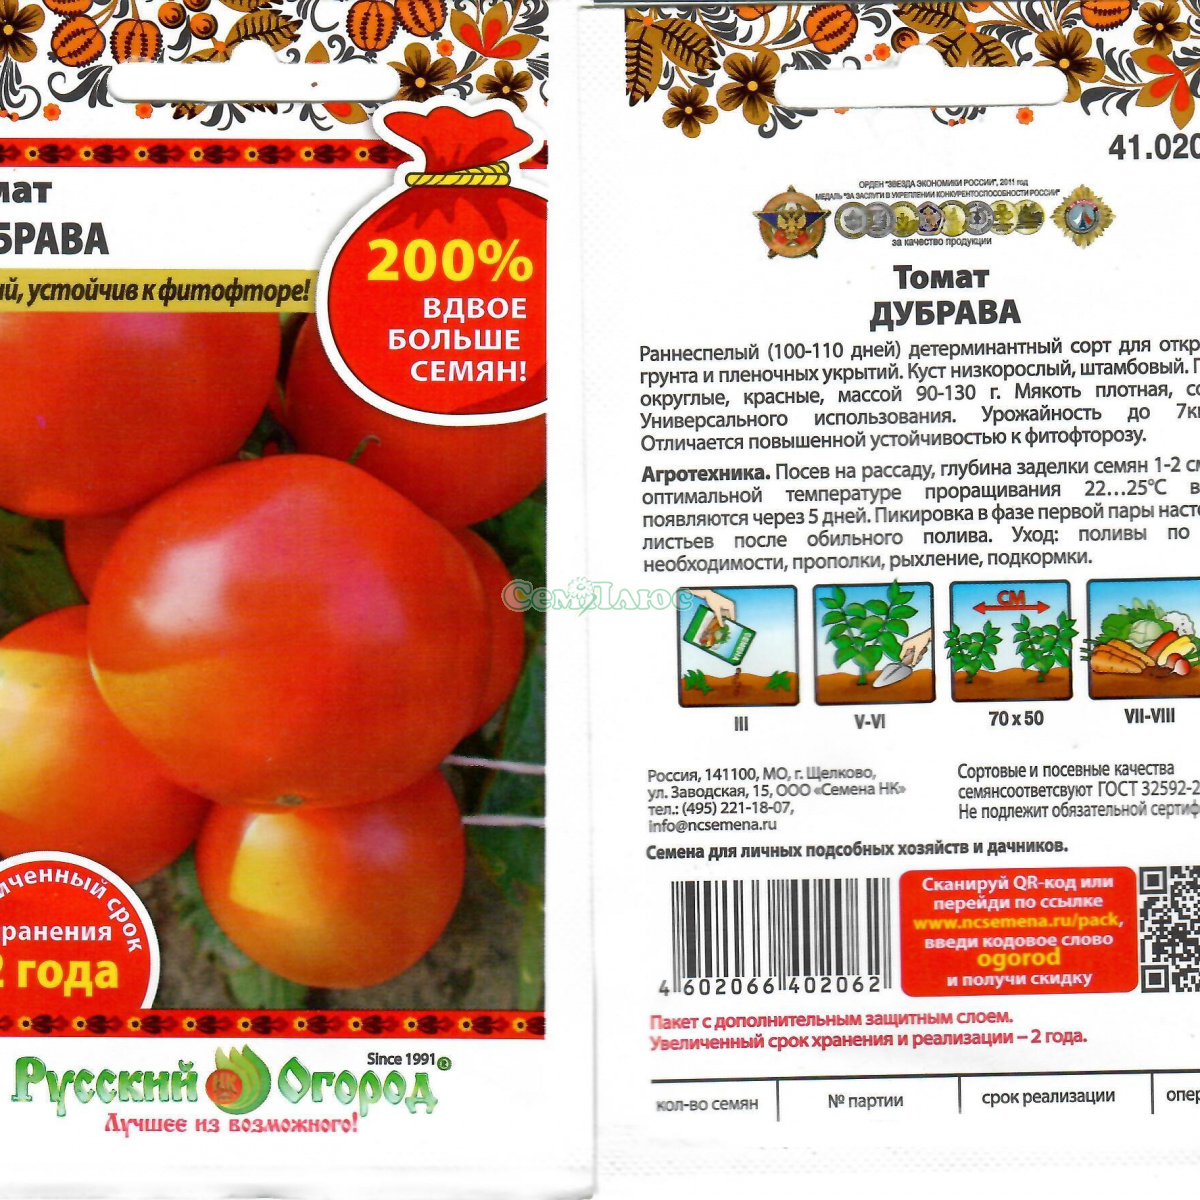 О томате золотая теща: описание сорта, характеристики помидоров, посев